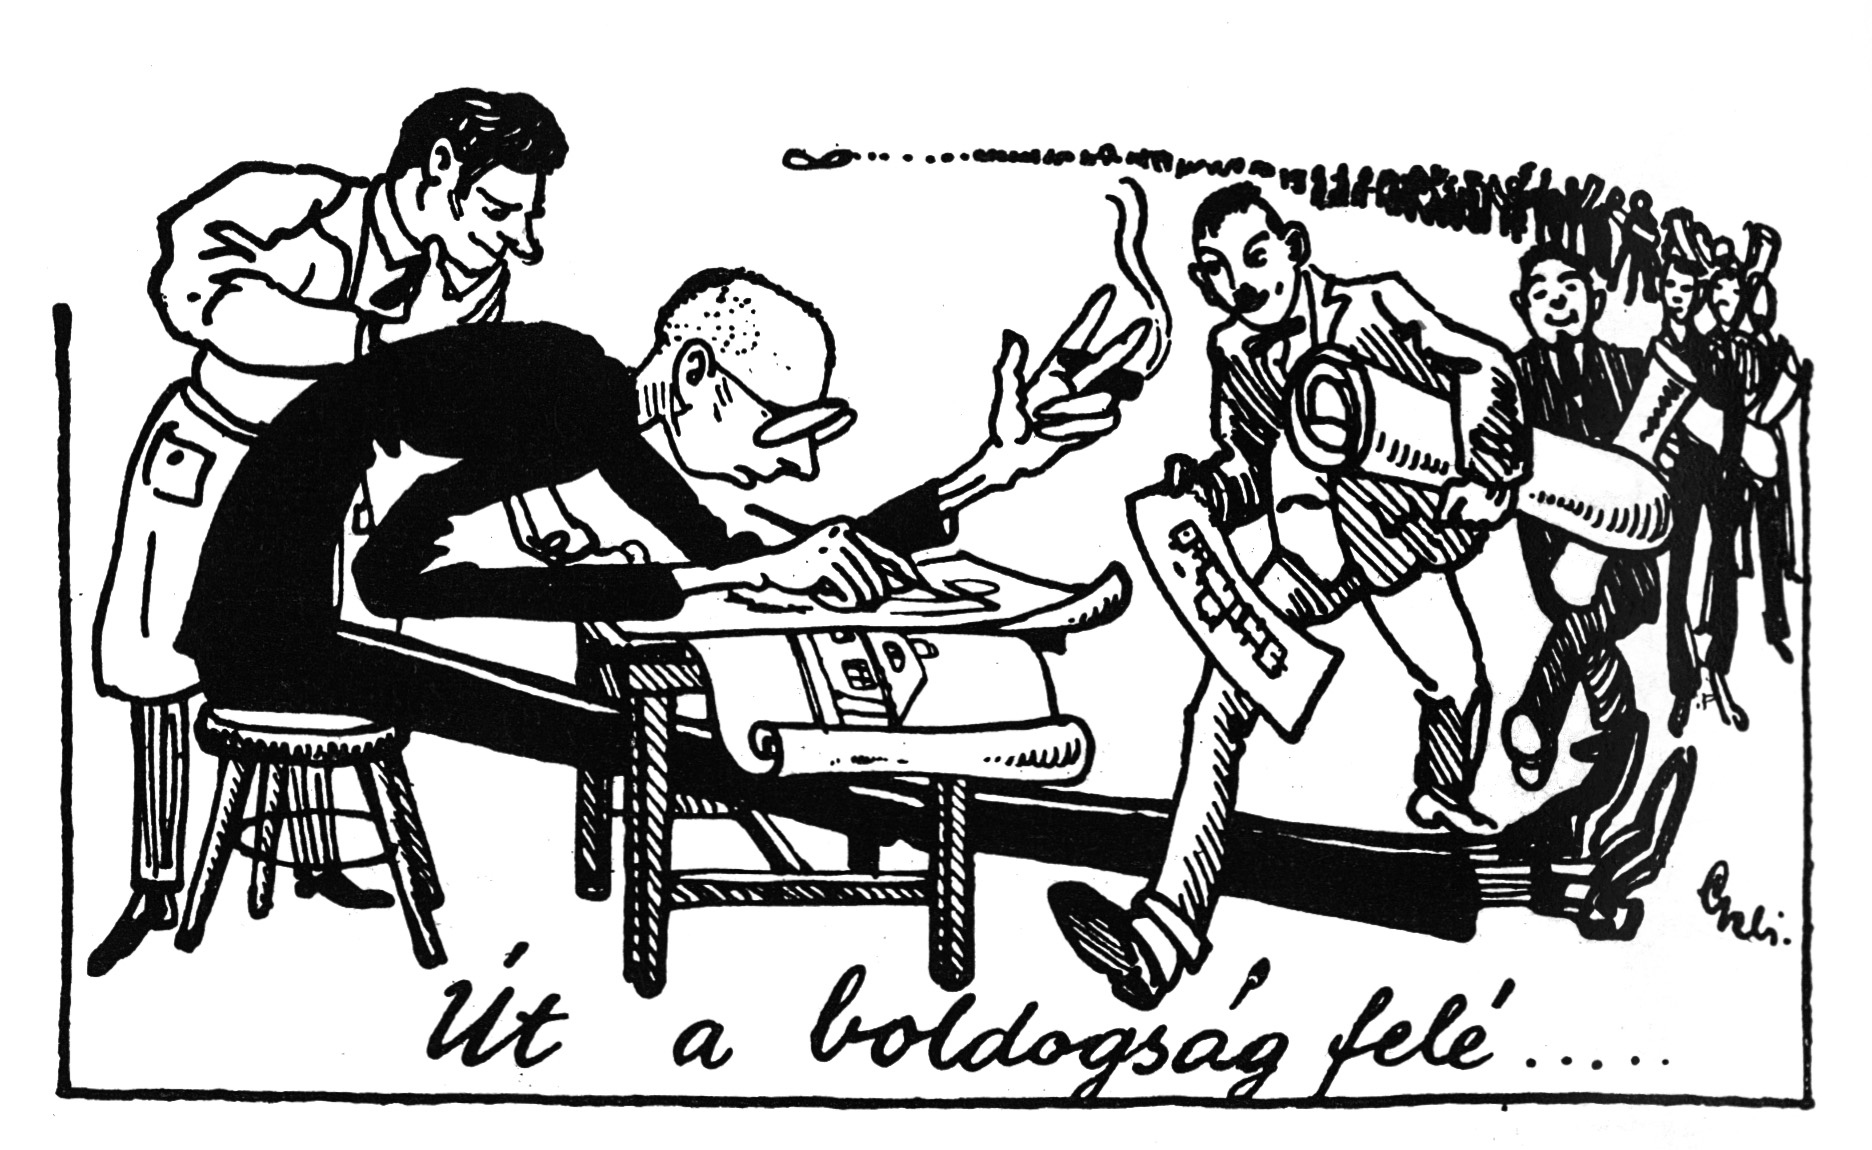 Kotsis az építész hallgatók terveit korrigálja – karikatúra a Megfagyott Muzsikus című diáklapból (Forrás: Megfagyott muzsikusok 1898-1974. Szerk.: Gerle János. Bercsényi 28-30, 1987)